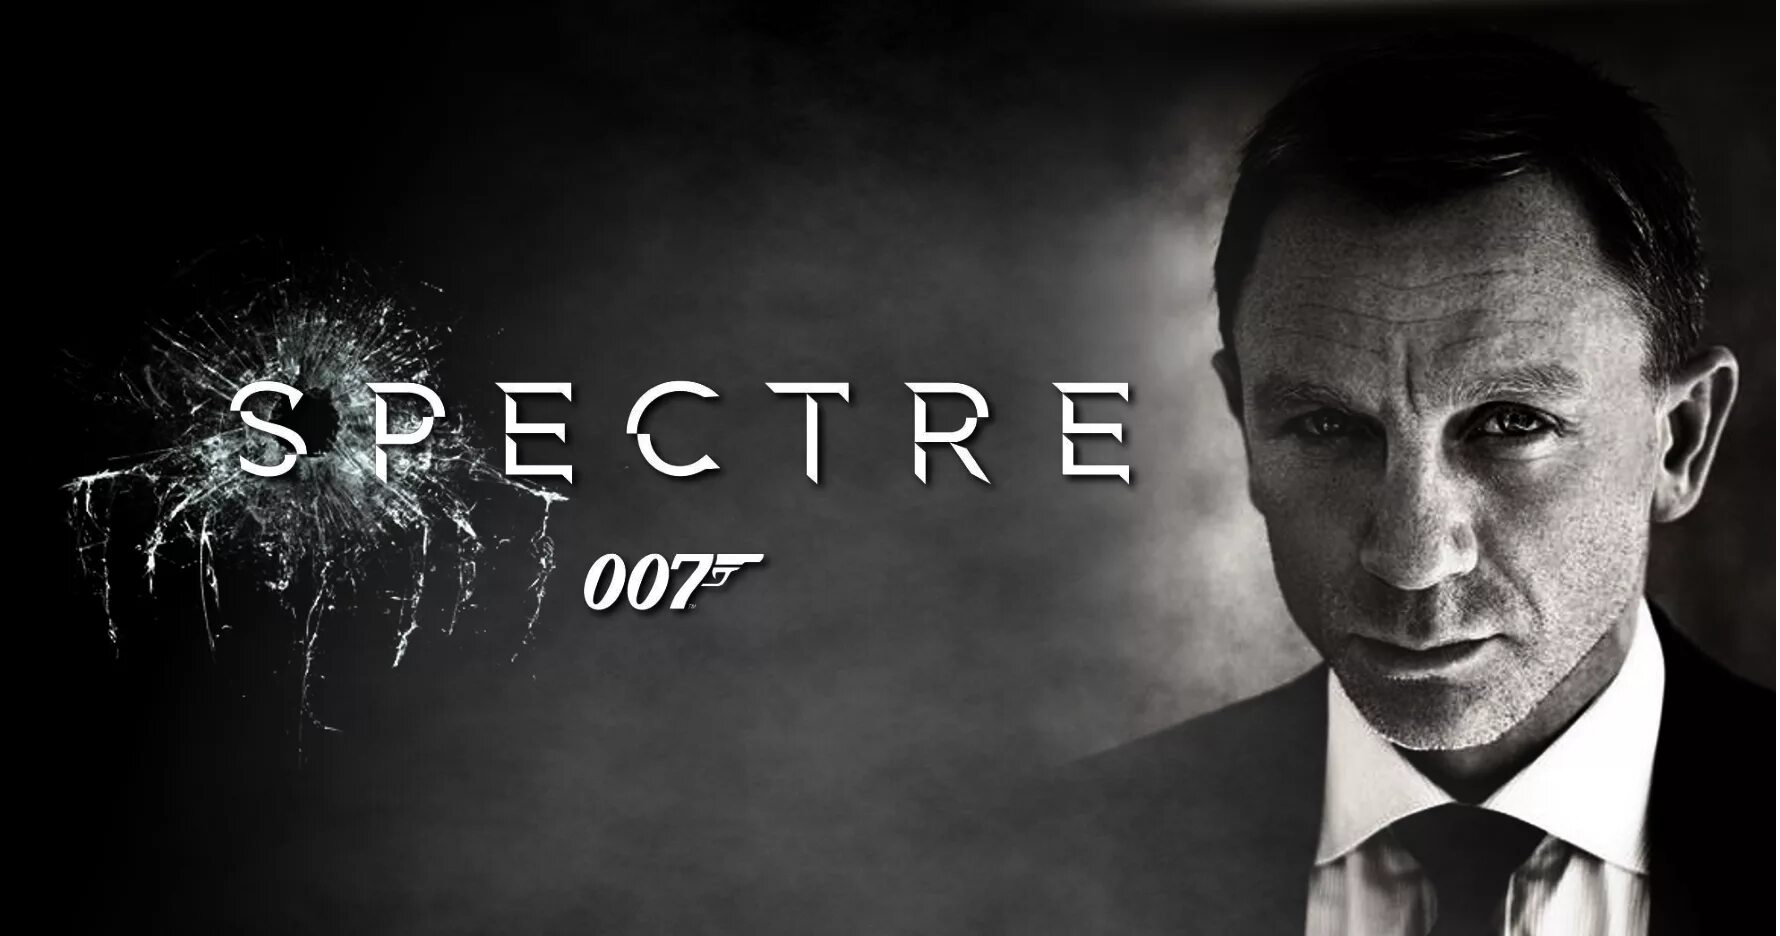 James Bond 007 Spectre. Spectre is a brilliant